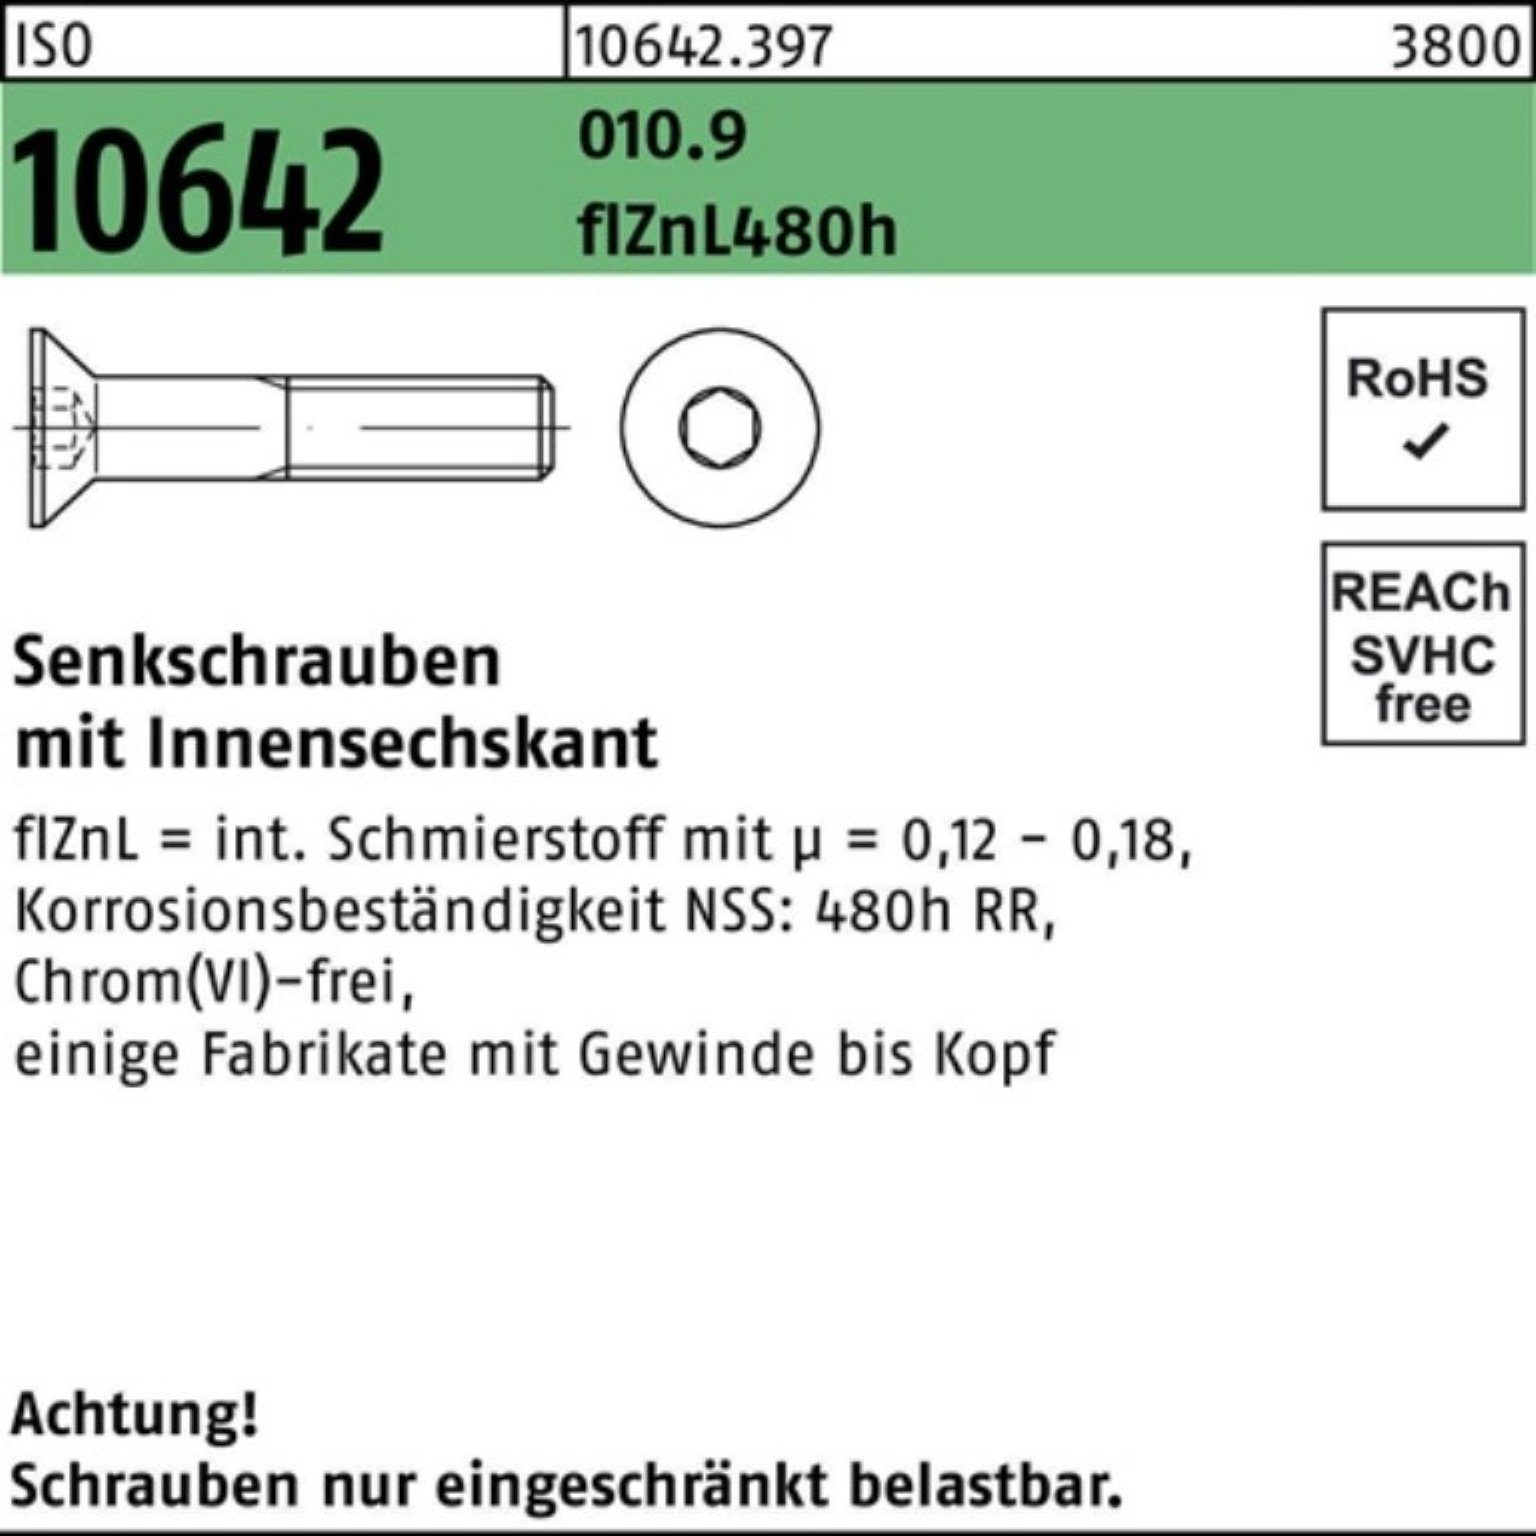 Pack flZnL M10x45 Innen-6kt Senkschraube 10642 ISO 480h Senkschraube 100er zi Reyher 010.9